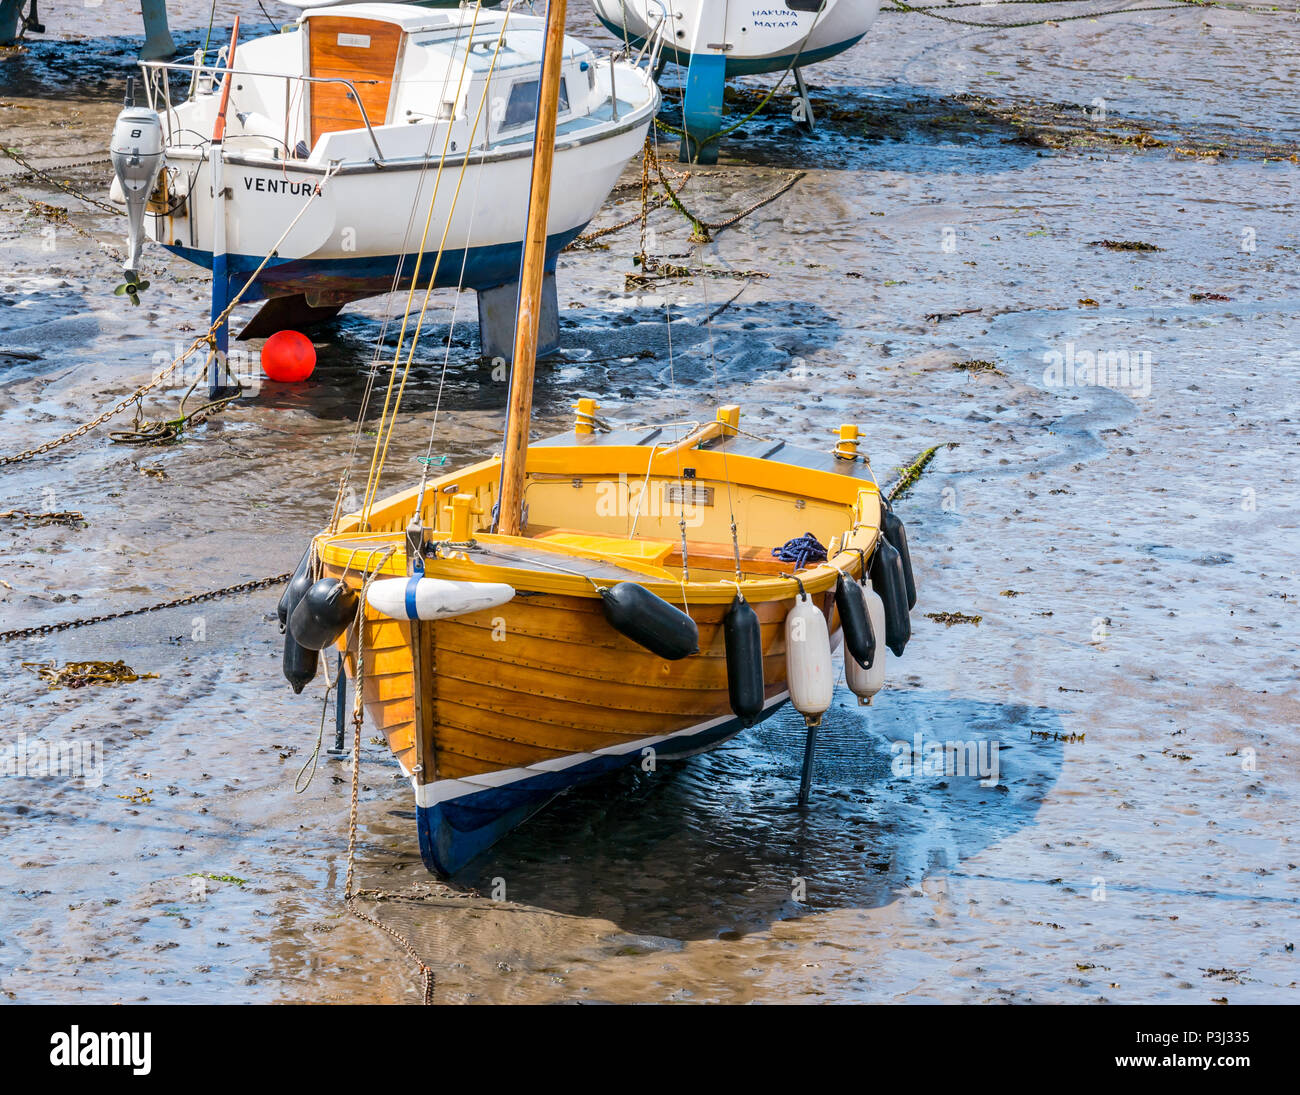 In legno barca a vela e altre imbarcazioni nel fango con la bassa marea, North Berwick Harbour, East Lothian, Scozia, Regno Unito Foto Stock